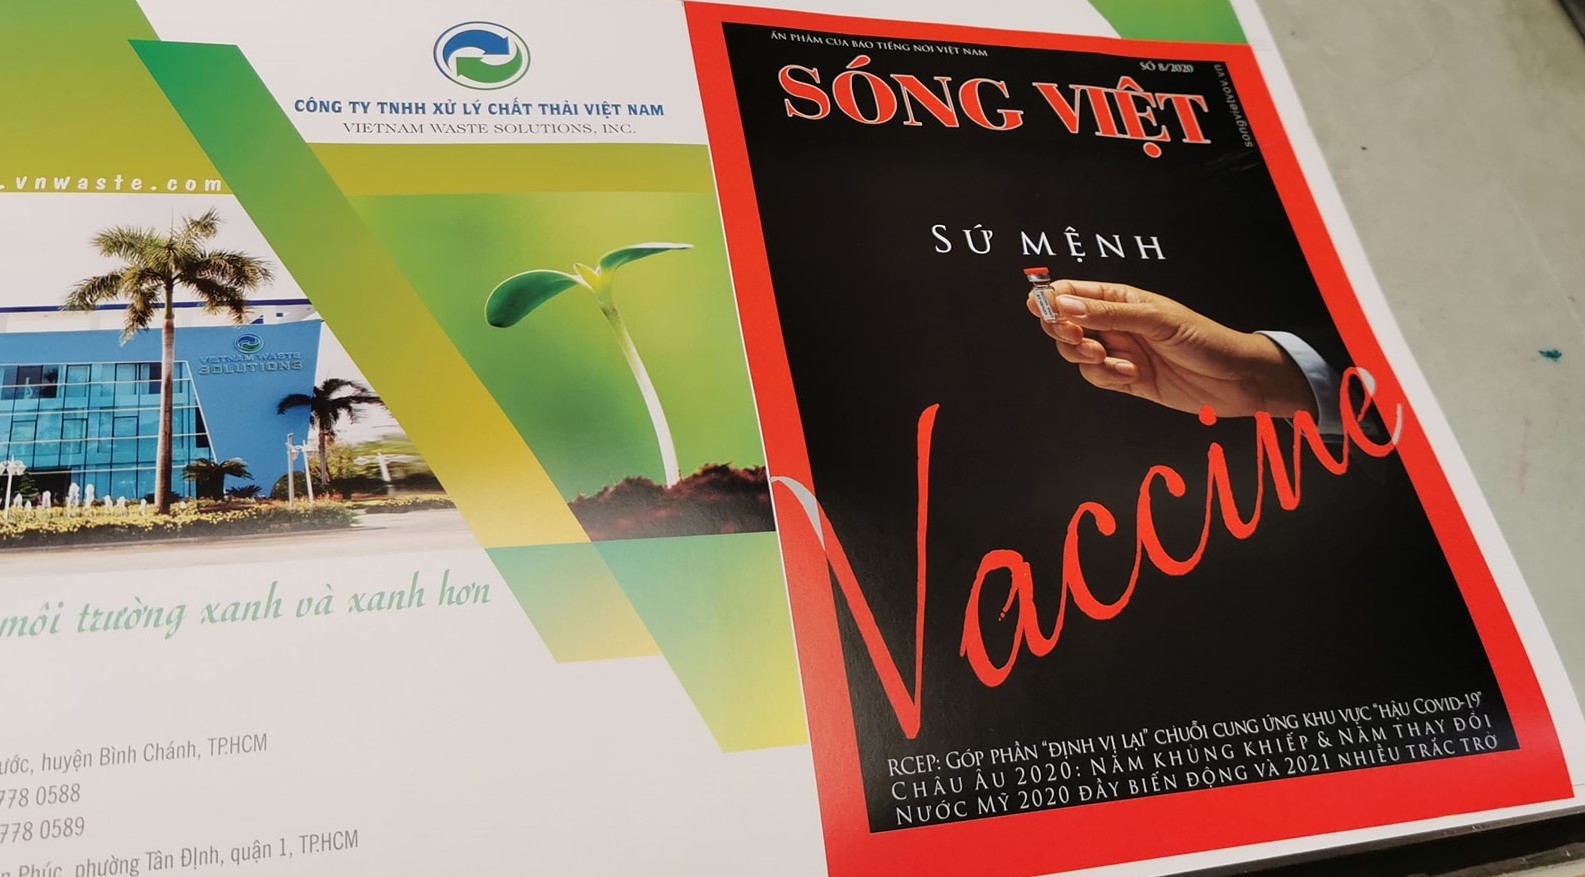 Nhiều người không nghĩ rằng Việt Nam sản xuất vaccine Covid-19